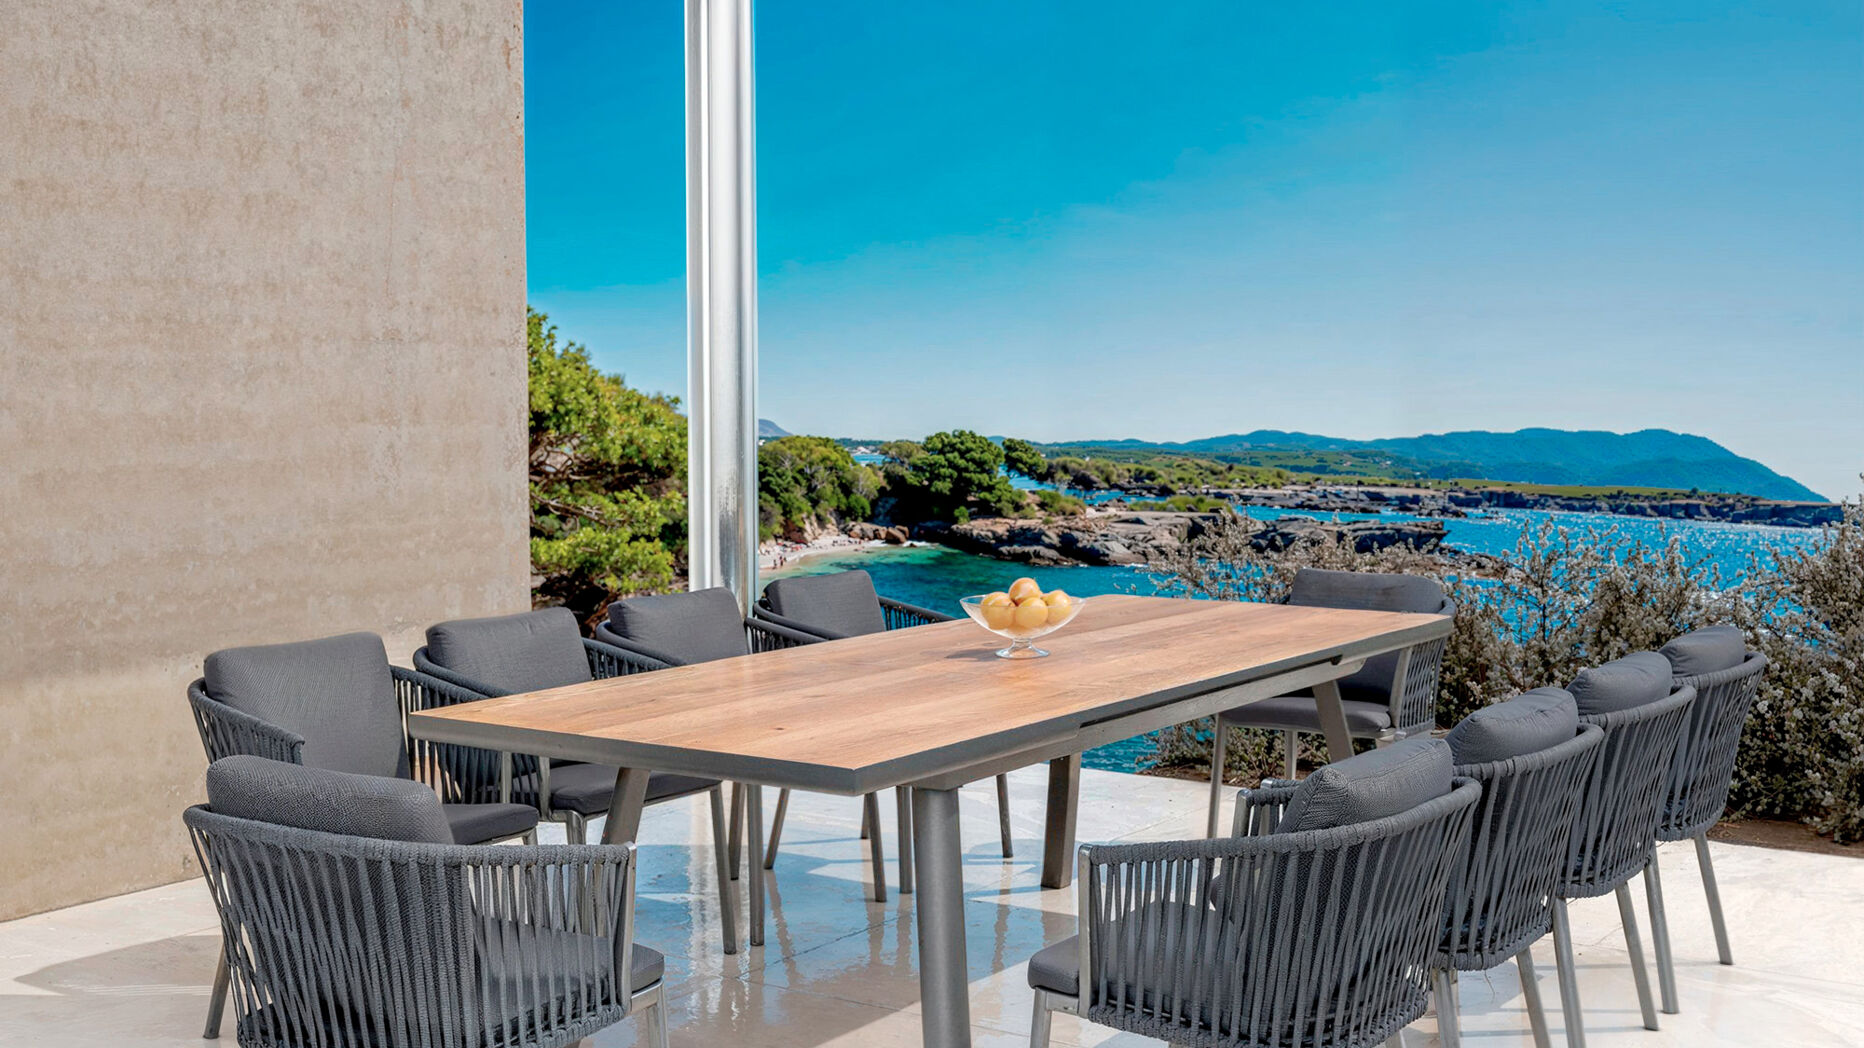 Gartentisch ausziehbar Aluminium - bis zu 10 Pers. (260 x 96 cm) Amalfi - Anthrazitgrau